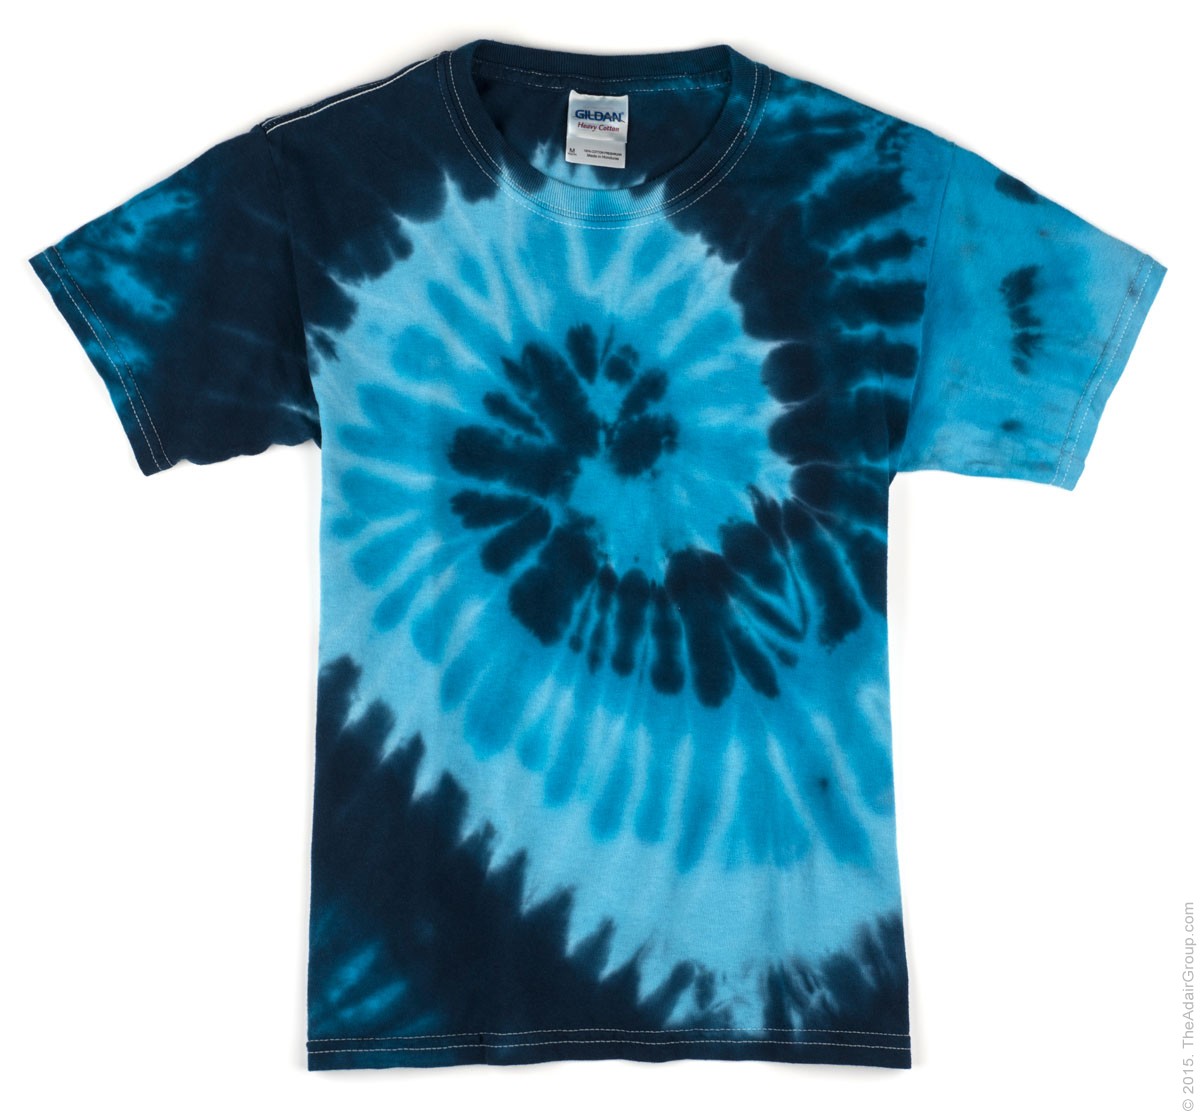 Wholesale Blue Ocean Kids Tie Dye T-Shirt